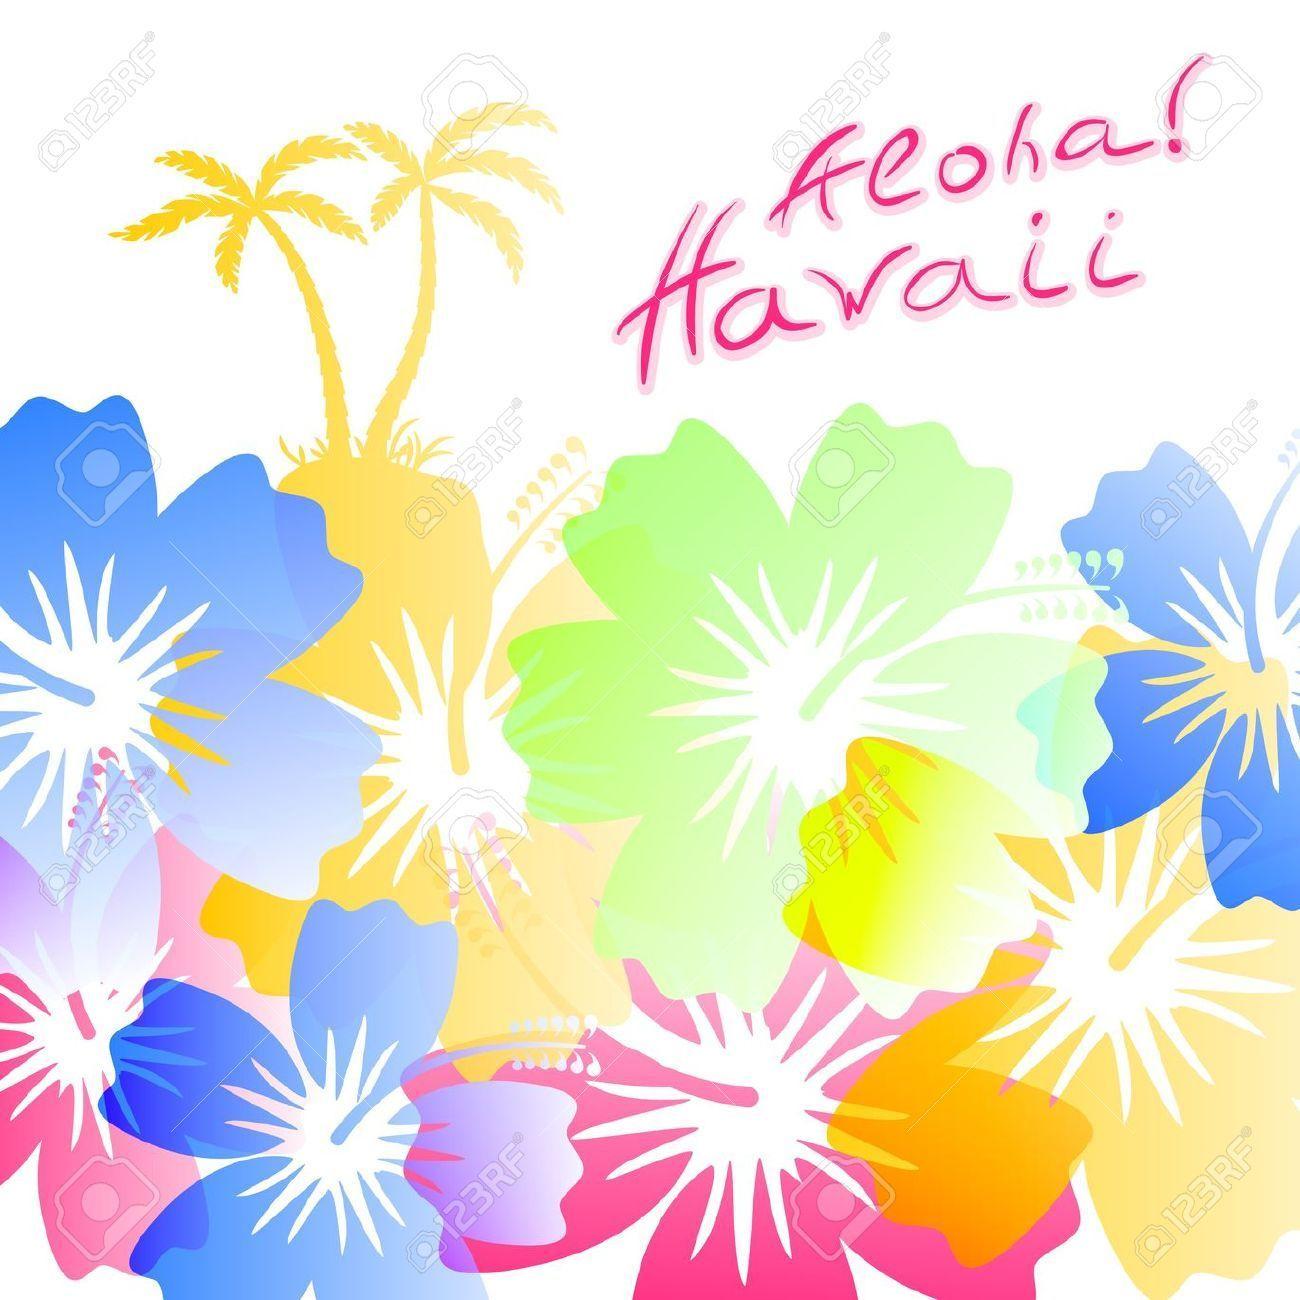 hawaiian clip art background - photo #36